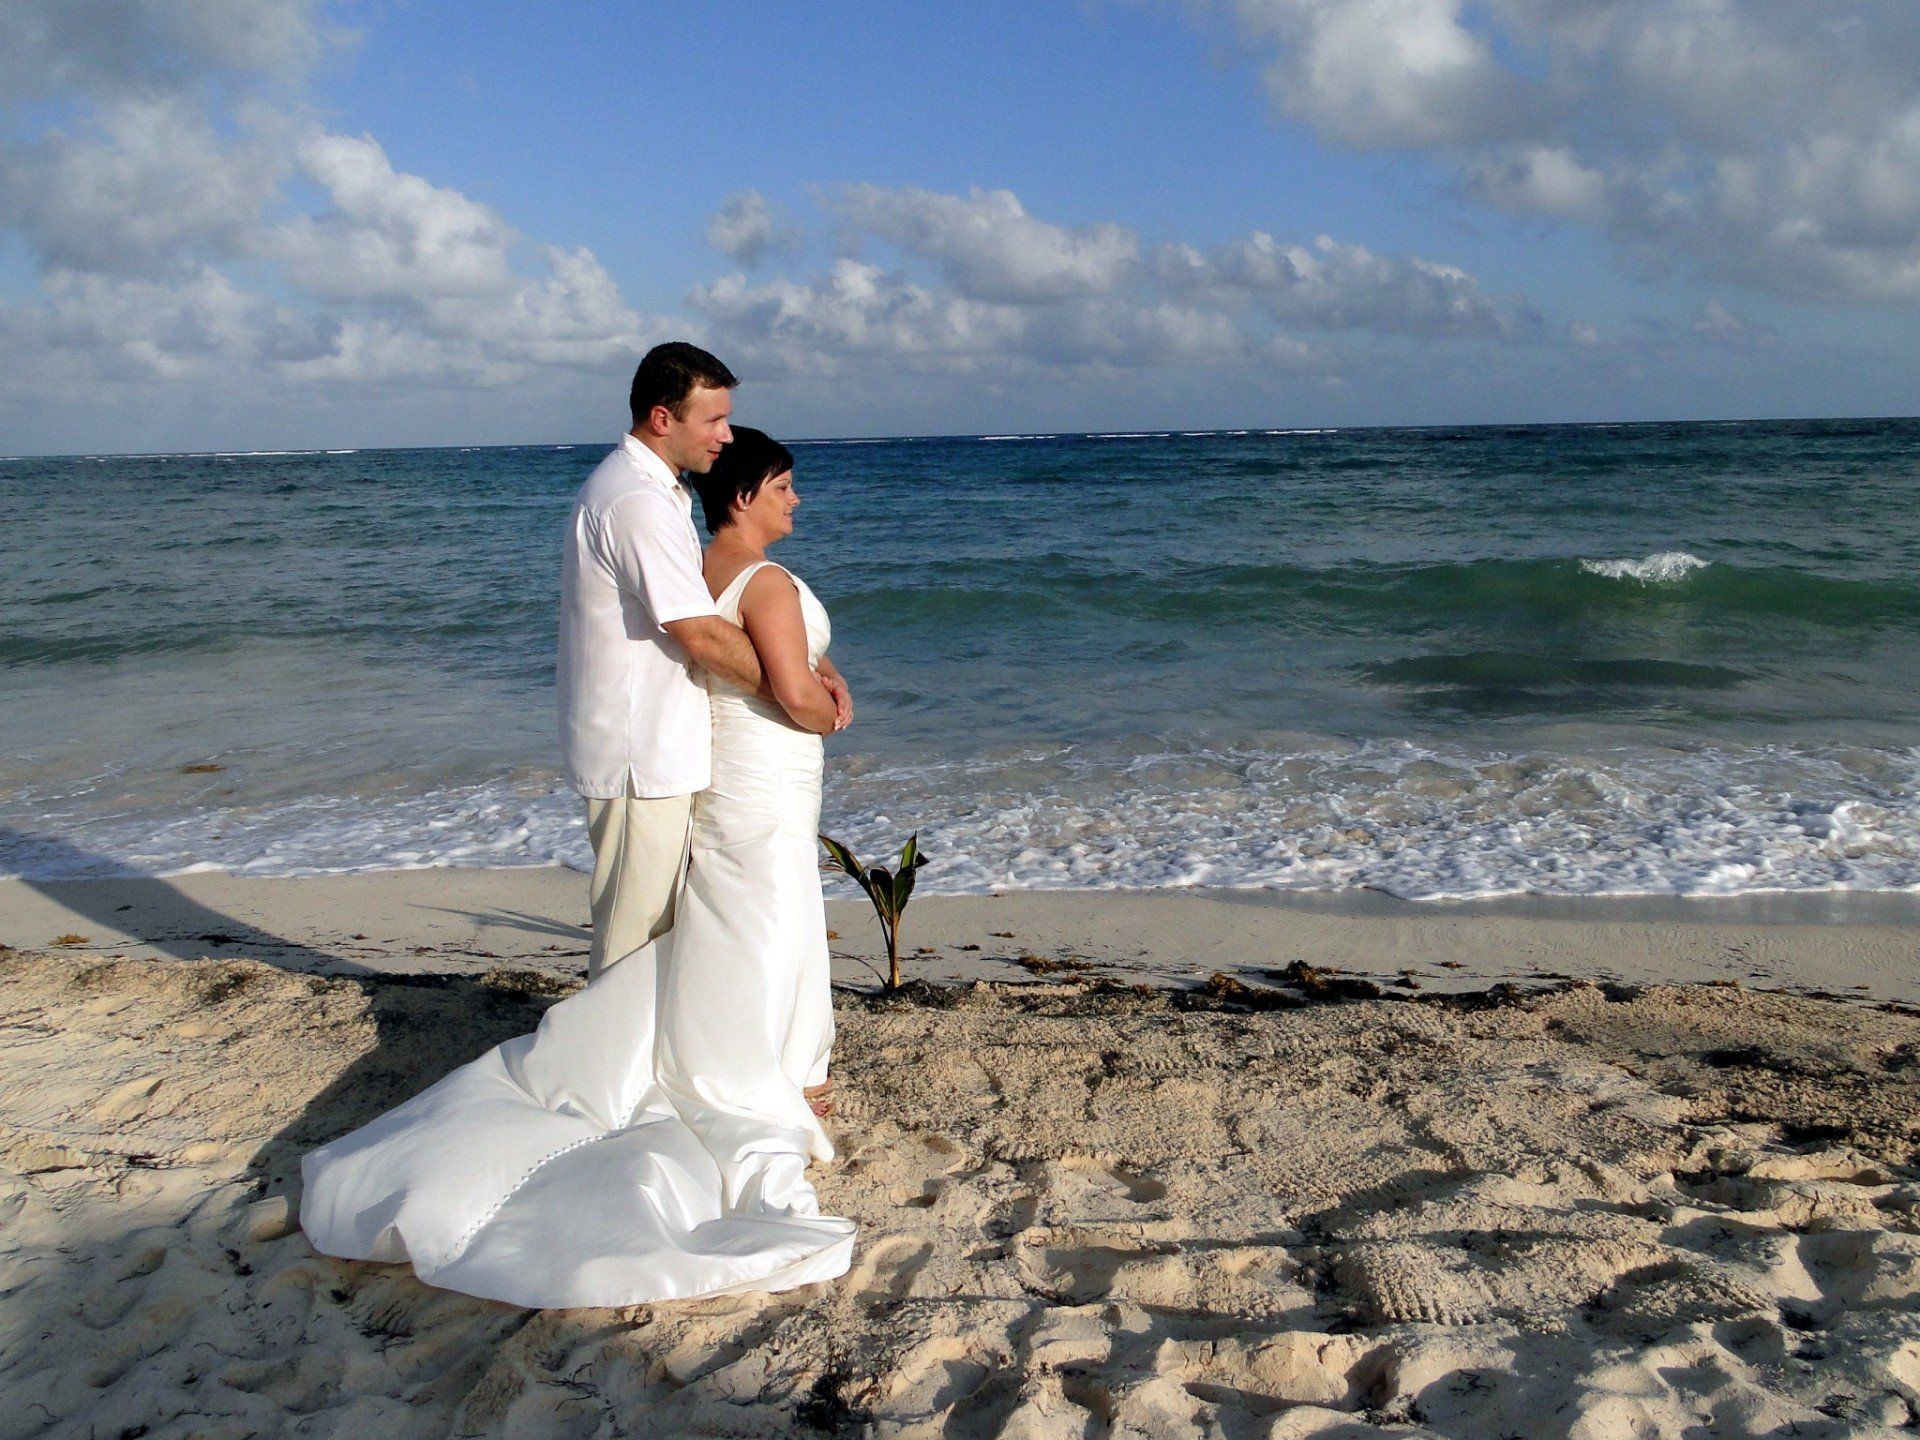 Weddings on the beach